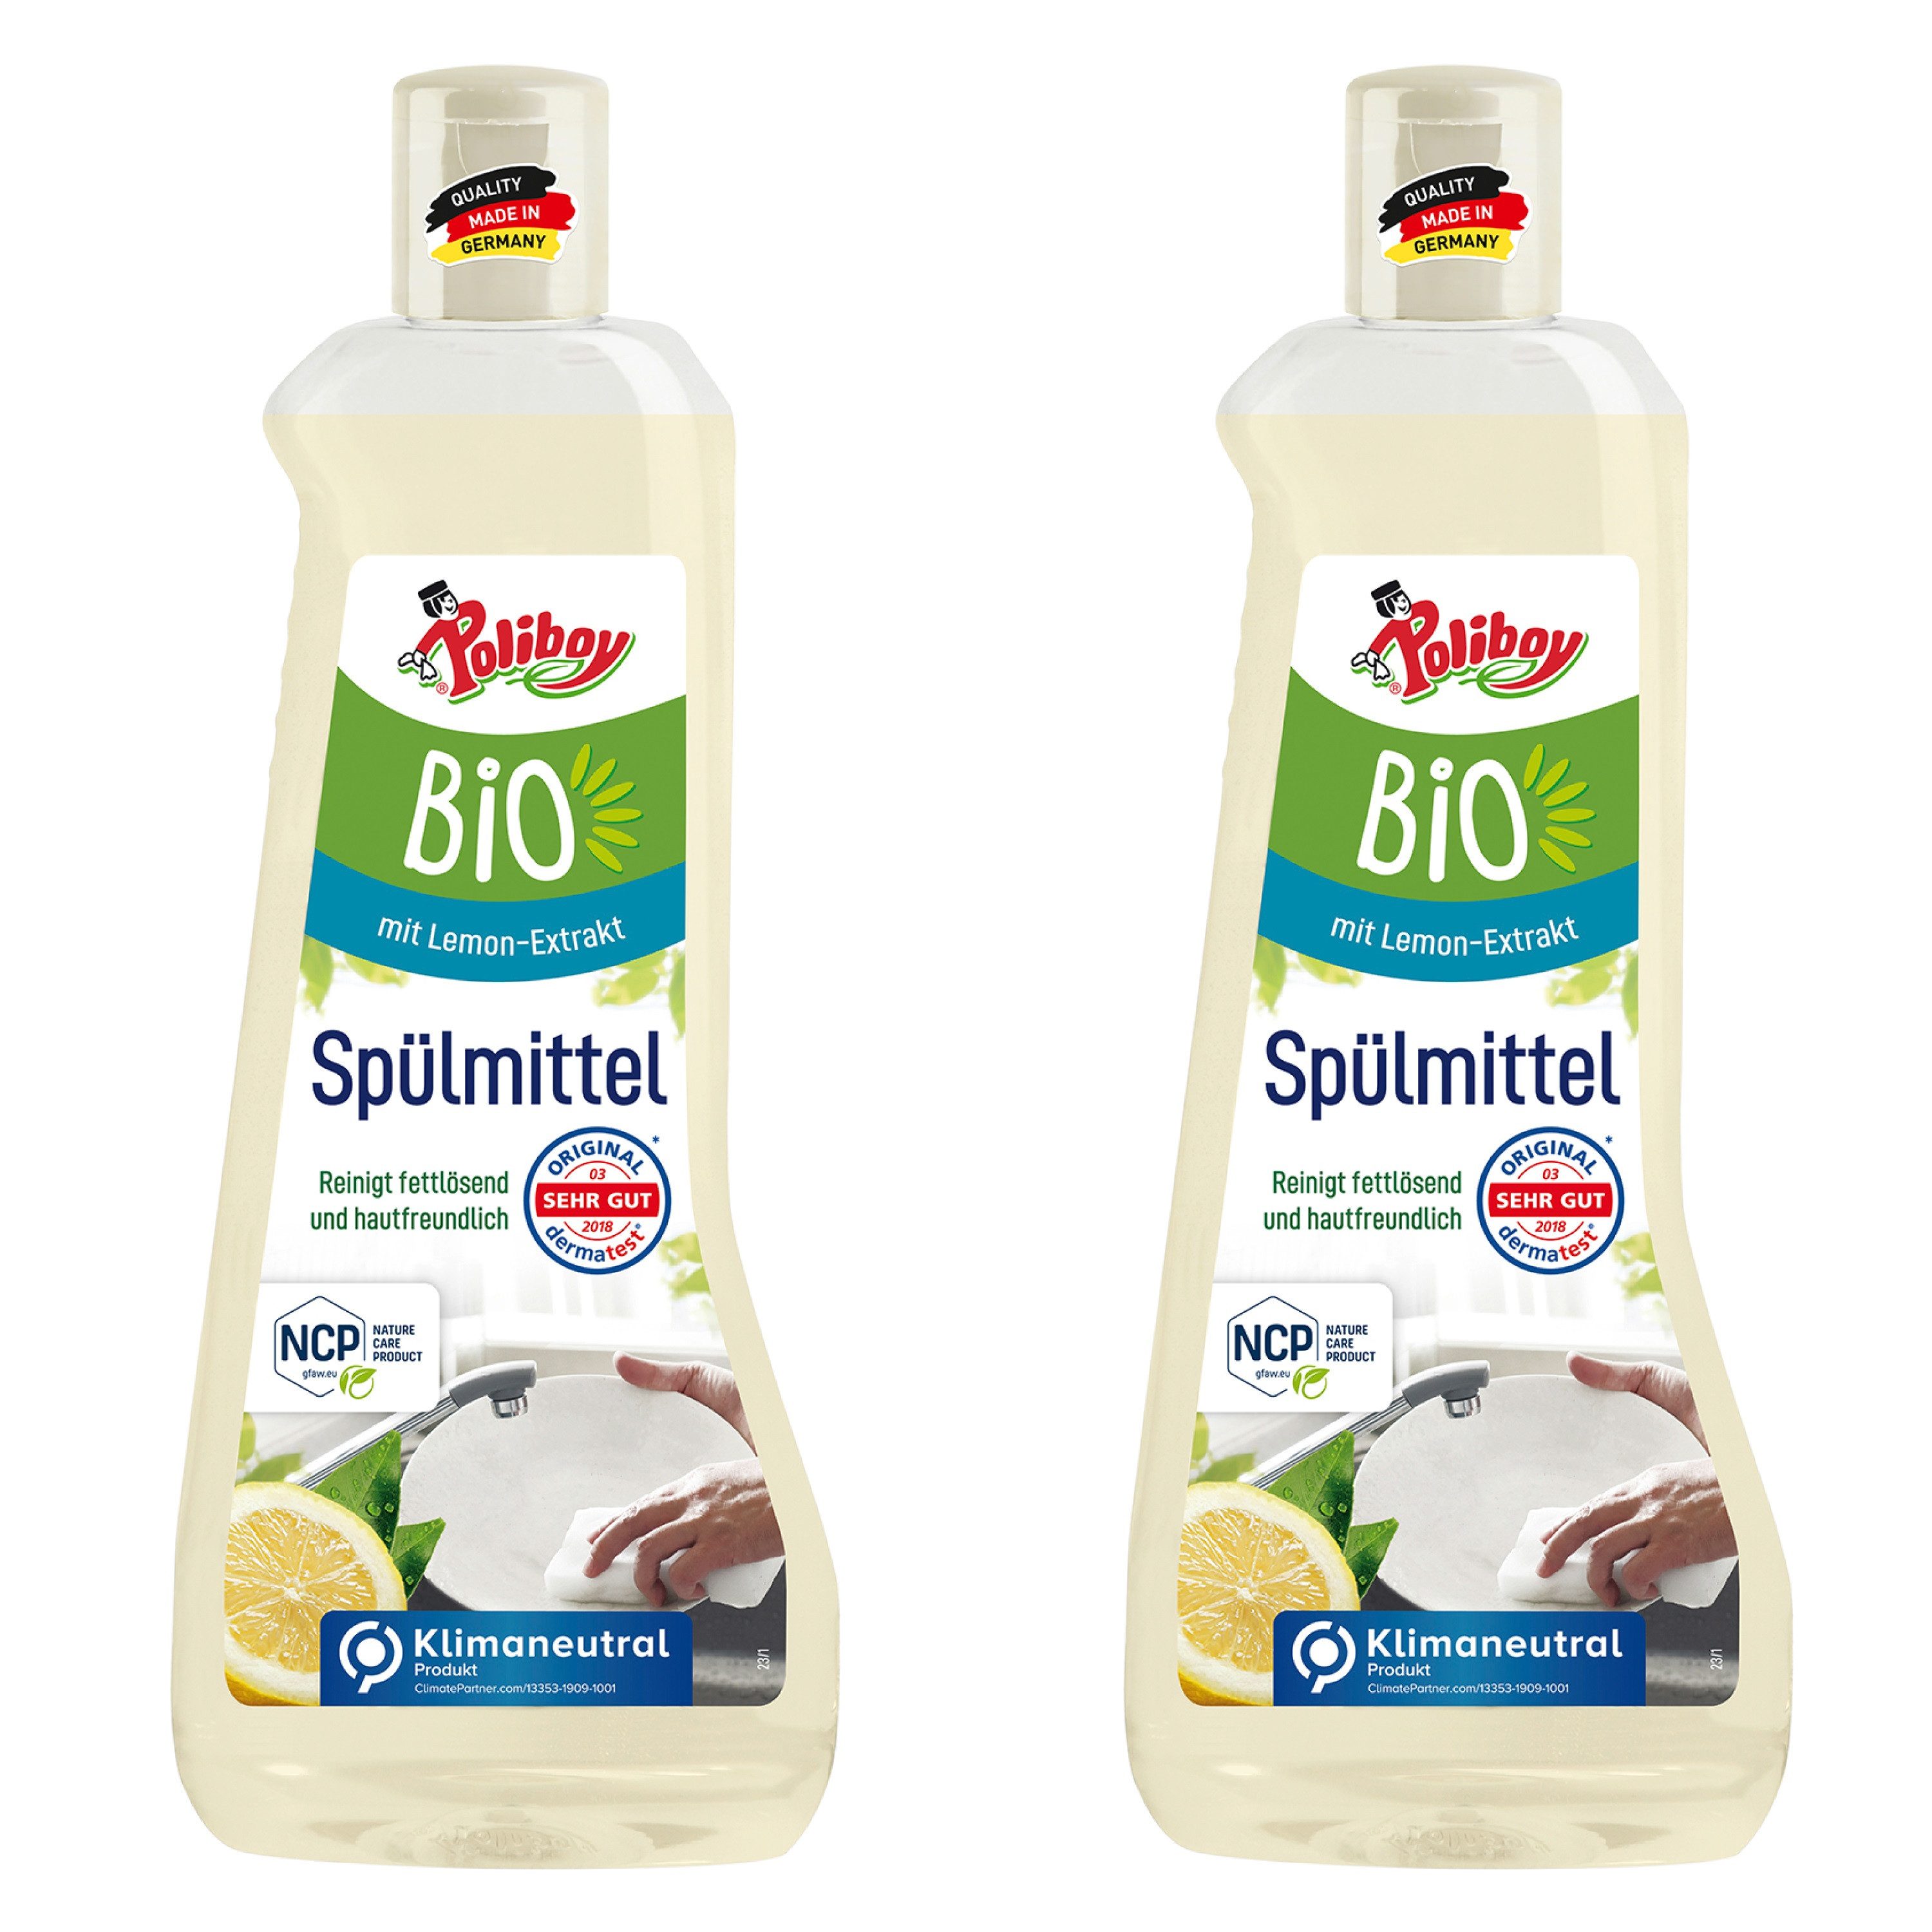 poliboy - 1 Liter - Bio Geschirrspülmittel (perfekt für ökologisches Geschirrspülen - Made in Germany)